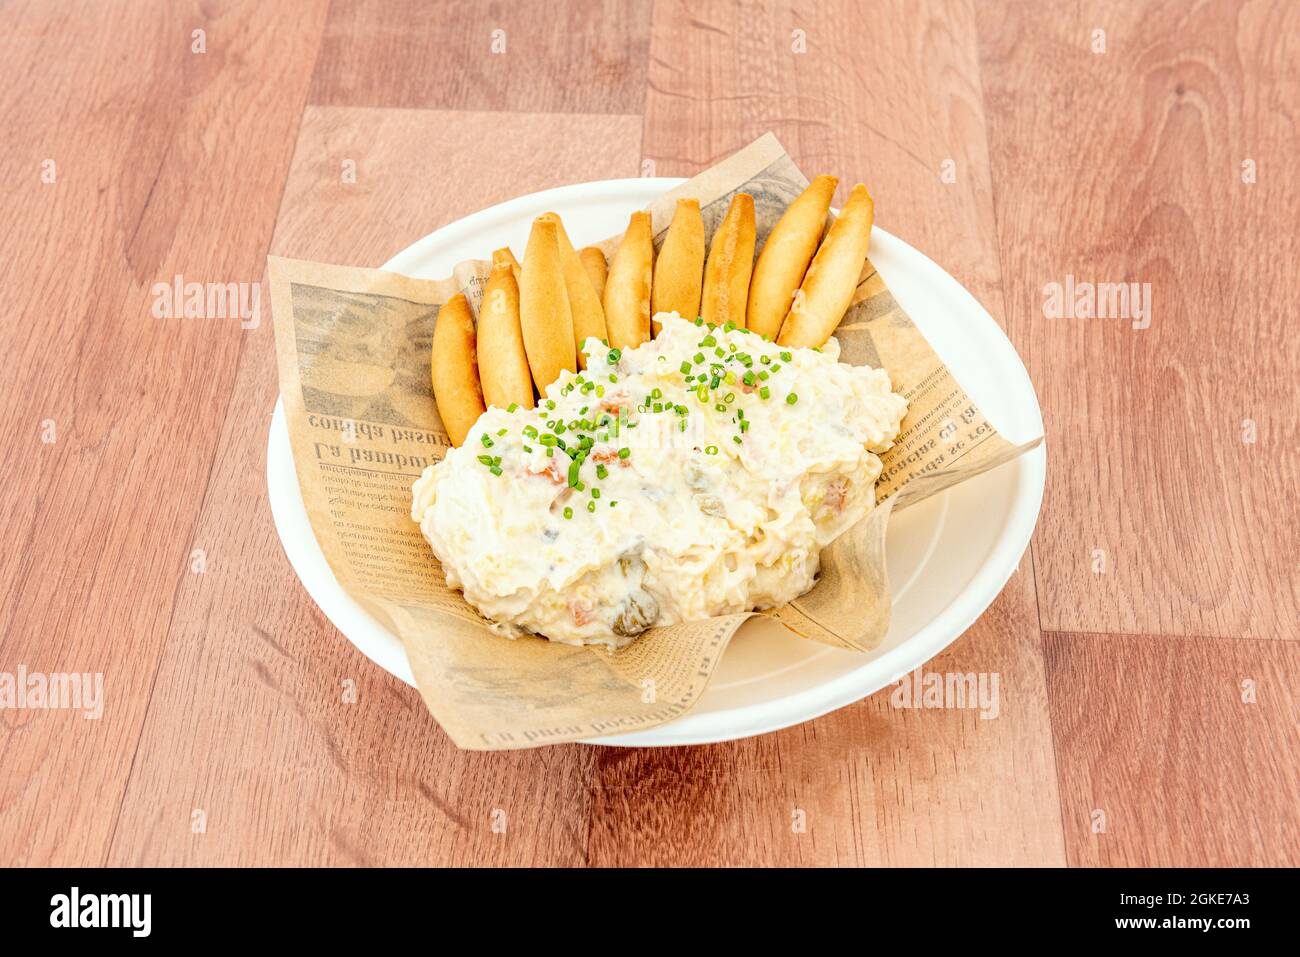 Salade russe avec mayonnaise, olives, carottes, œufs et pommes de terre bouillies et une bonne quantité de croûtons à partager comme tapas typiques espagnoles sur un tabl brun Banque D'Images